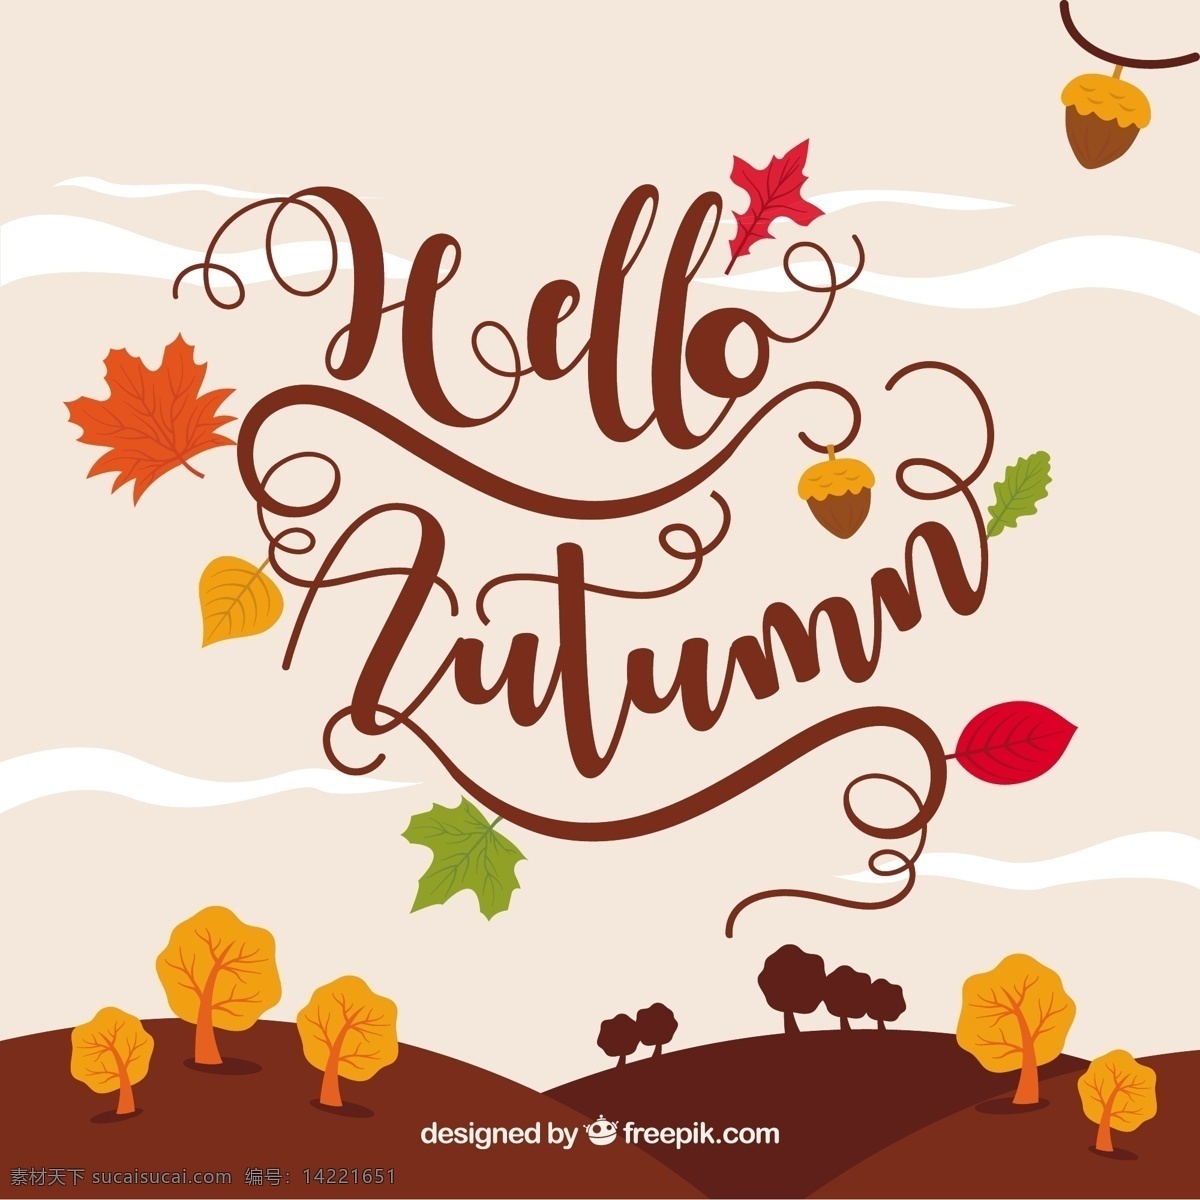 你好 秋天 美丽的风景 叶 自然 印刷术 森林 树叶 字体 文字 树木 颜色 讯息 刻字 树枝 温暖 秋叶 美丽